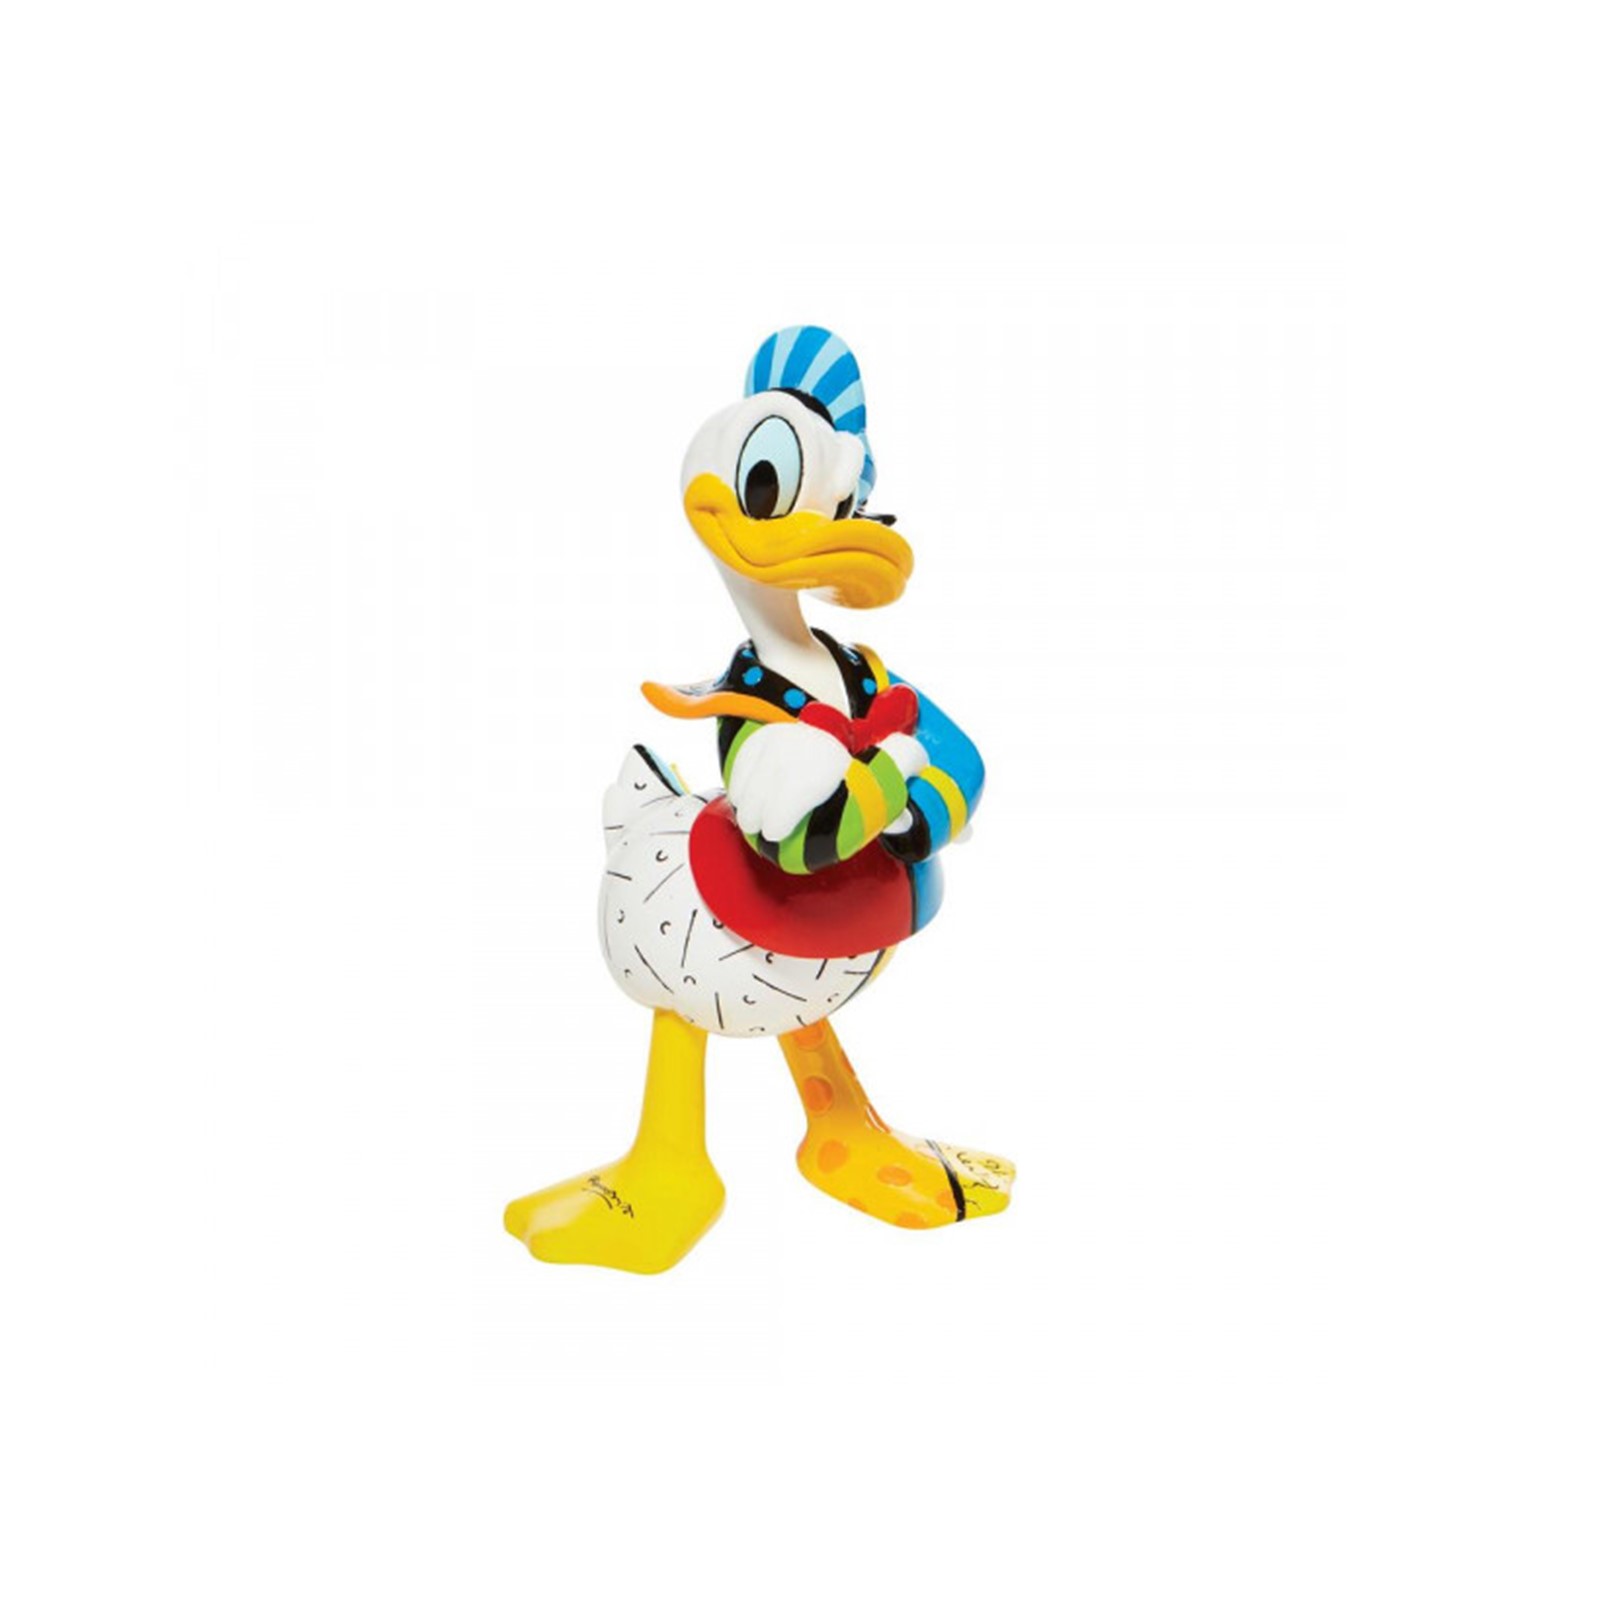 Figurine Disney Donald Duck Britto